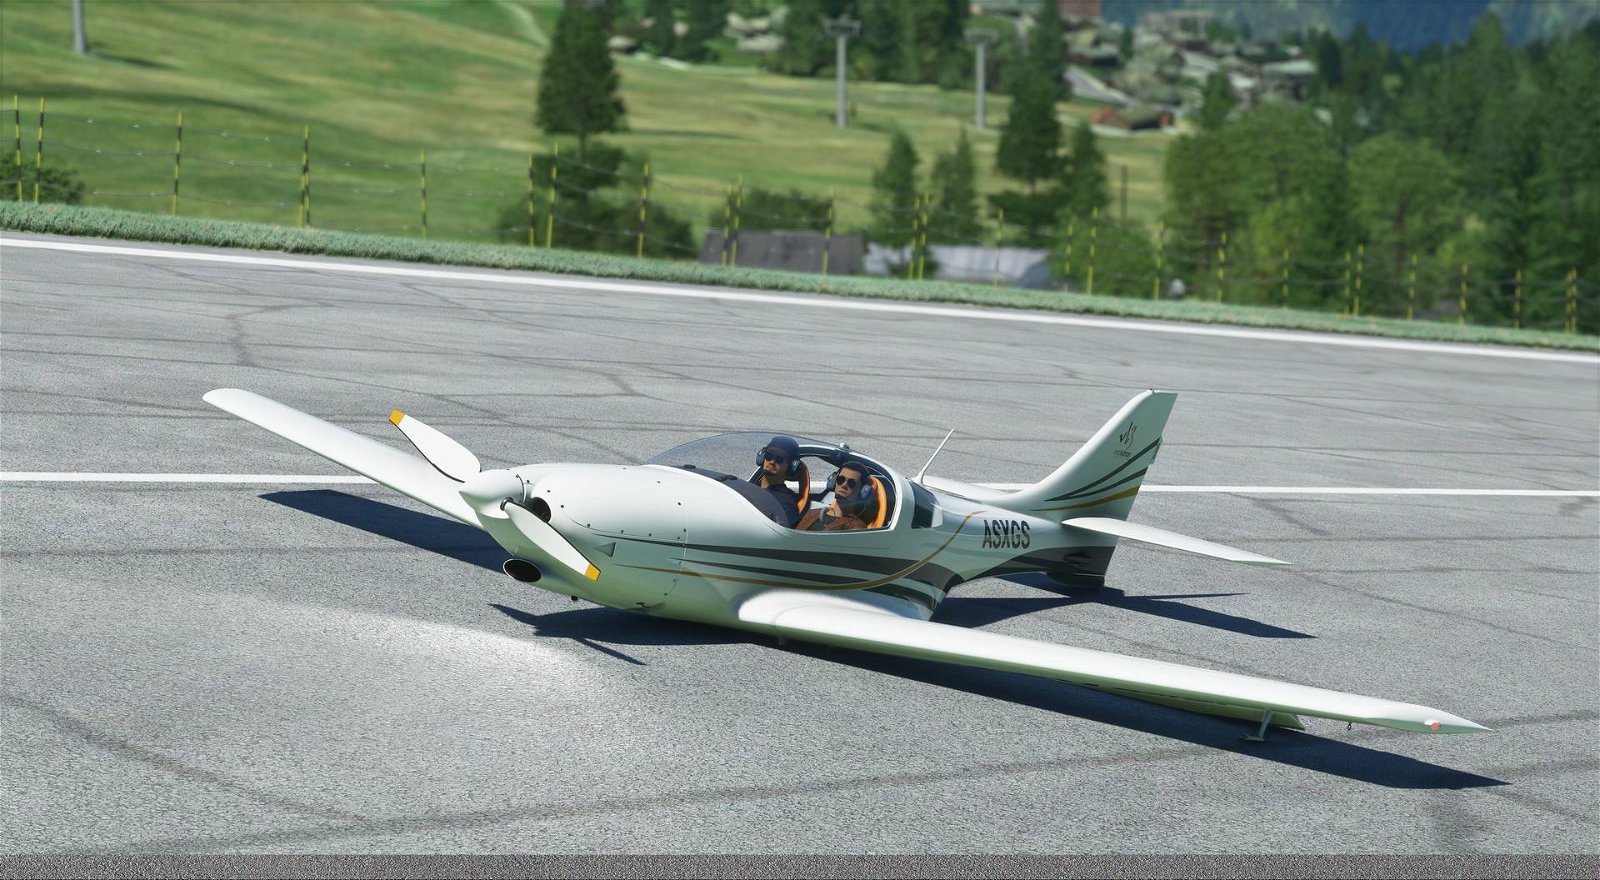 Immagine di Microsoft Flight Simulator: la grafica è incredibile, ecco come ci sono riusciti